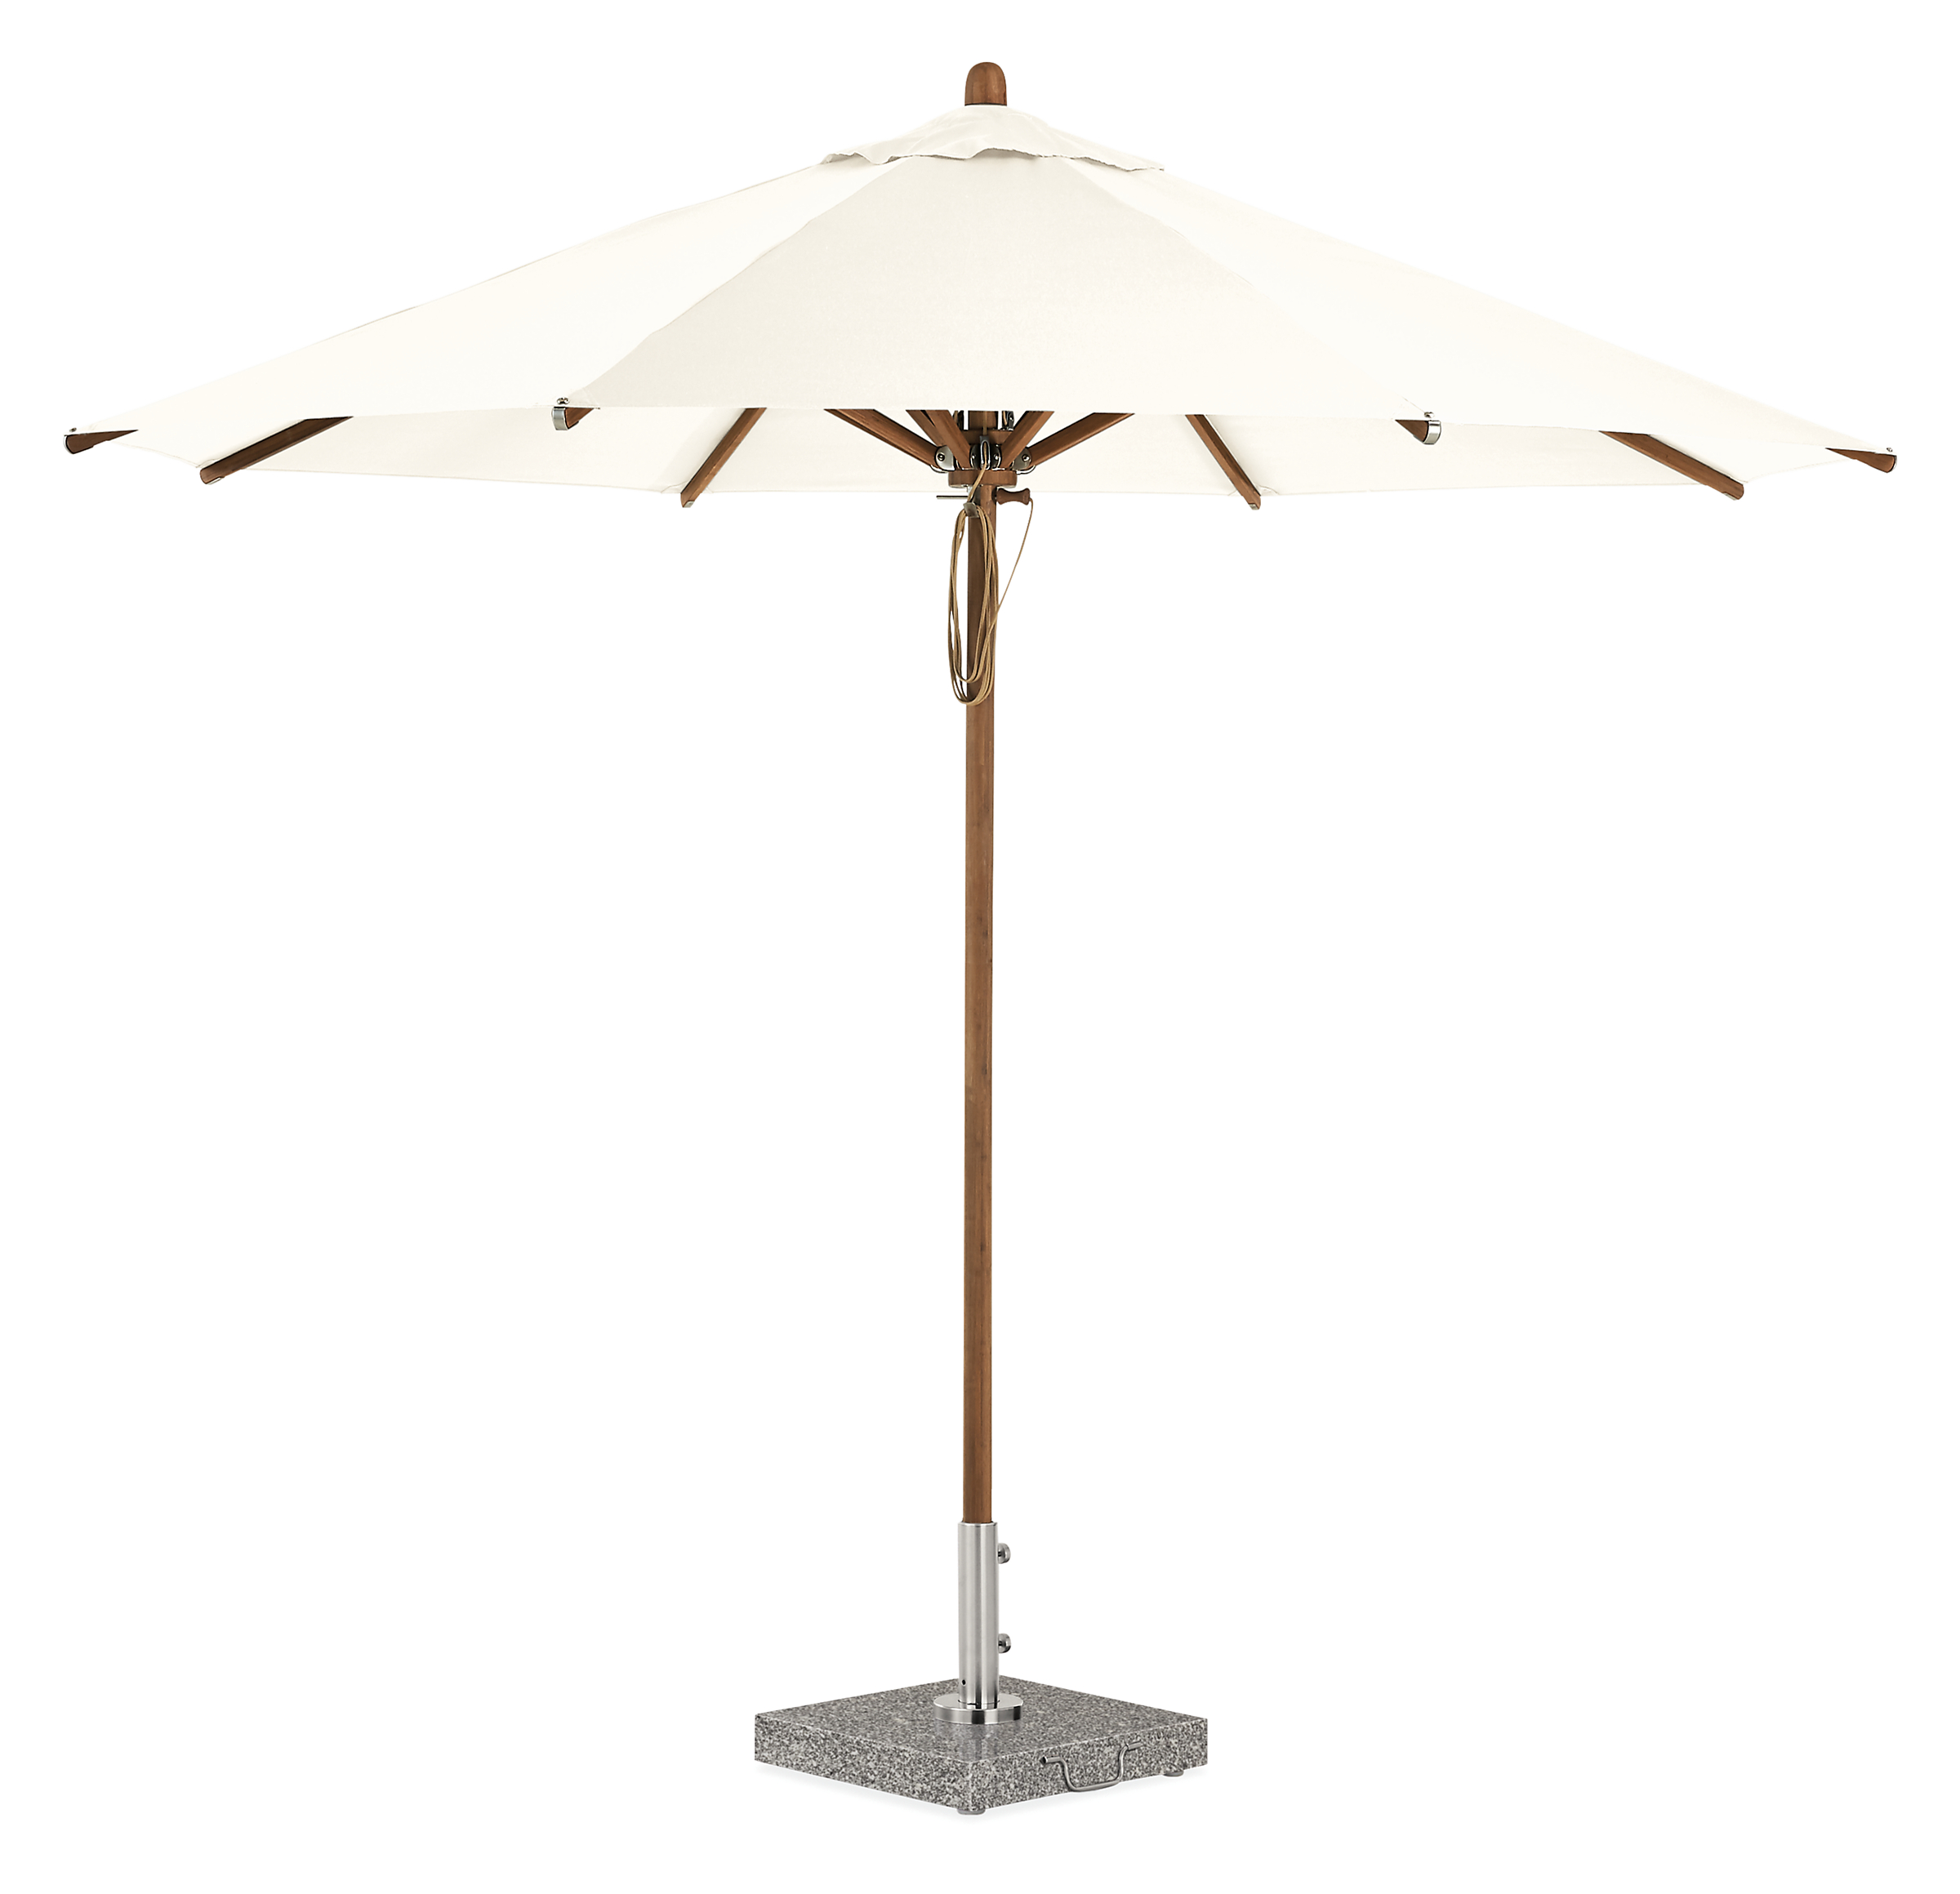 Cirro 10' Patio Umbrella White with Bamboo Pole